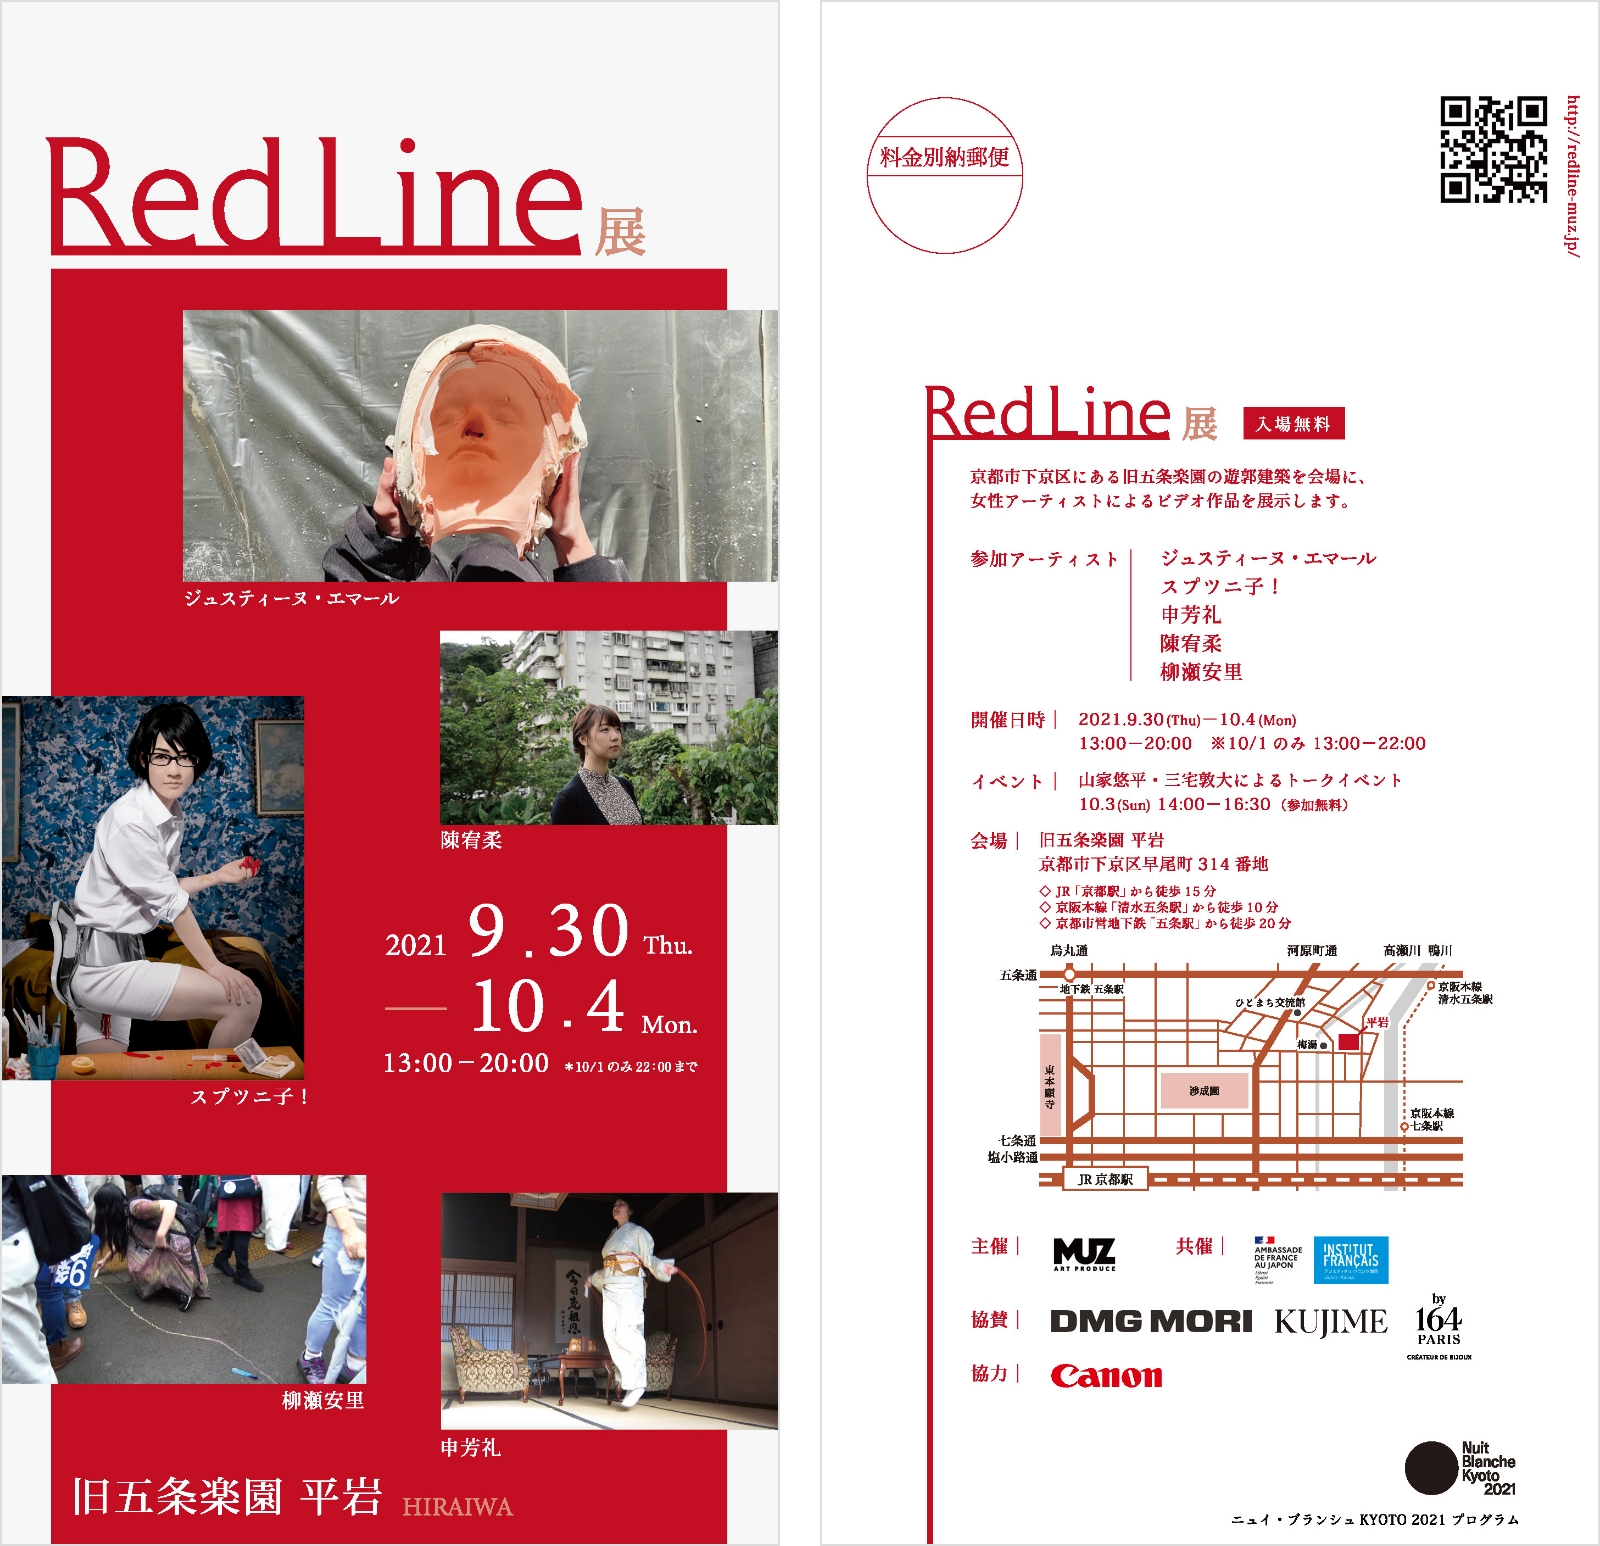 redline